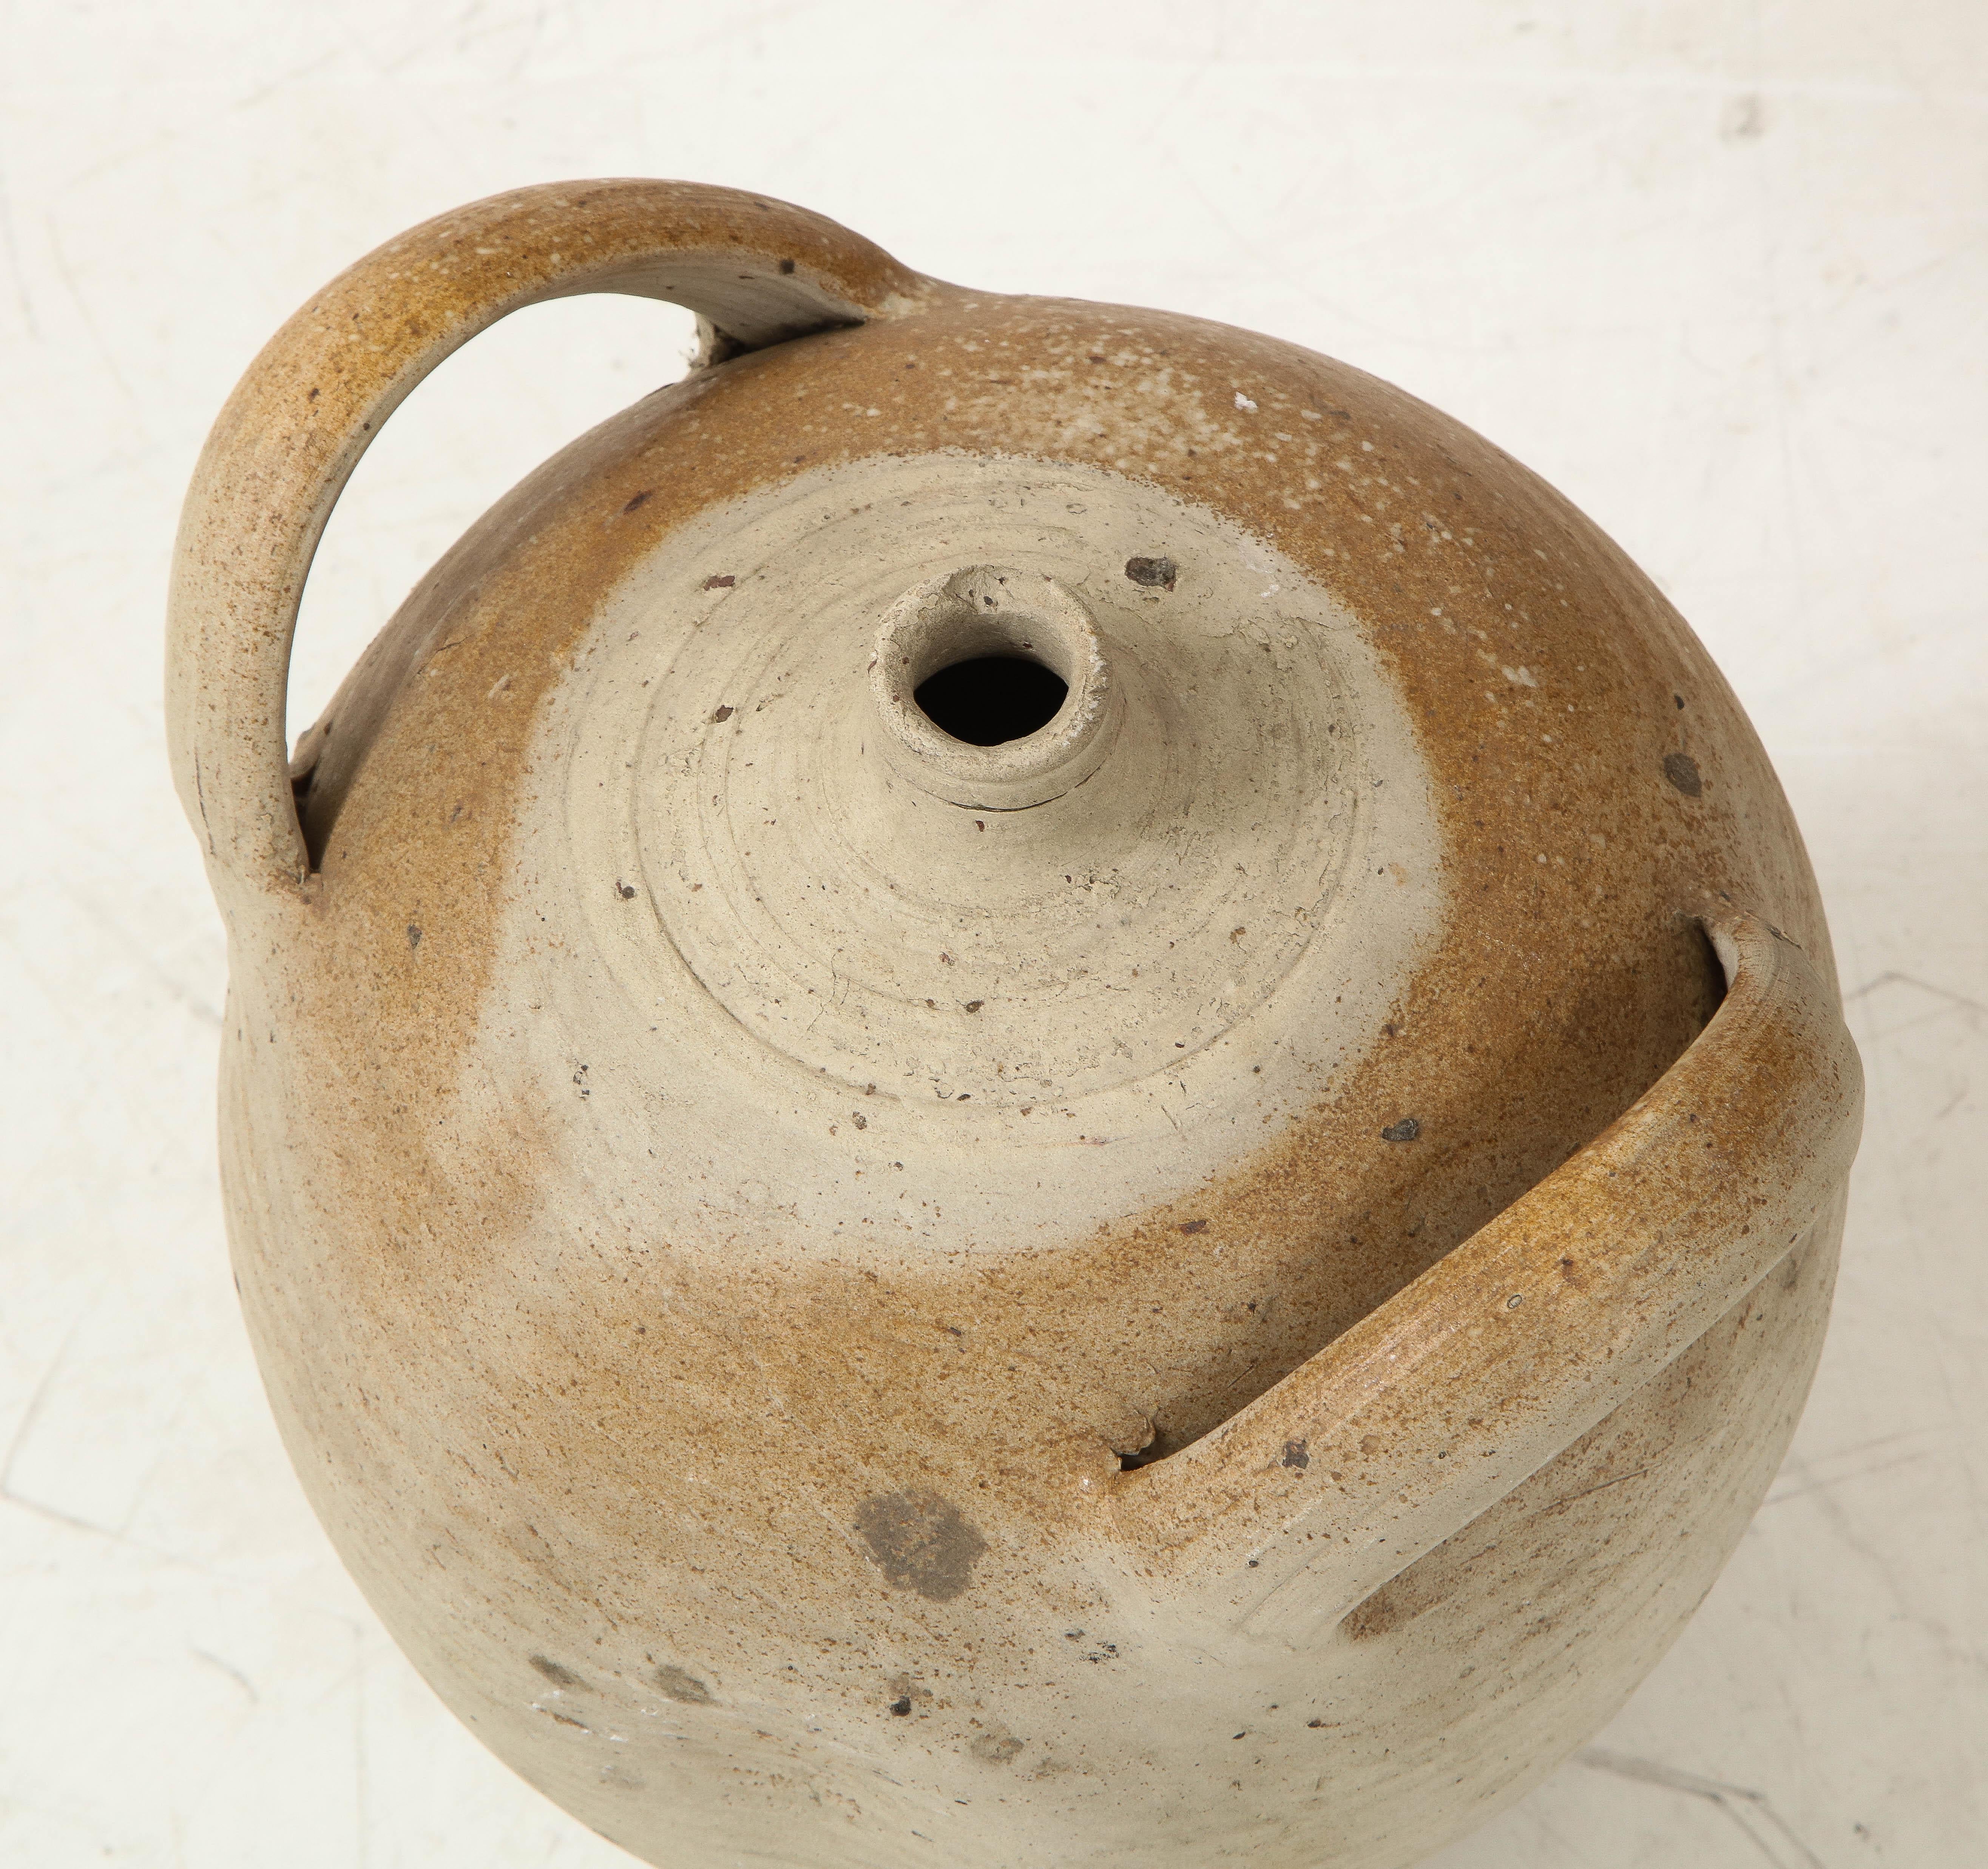 French Provincial large vintage stoneware pottery oil jug, jar, vessel or vase
France, circa 1960 
Size: 19